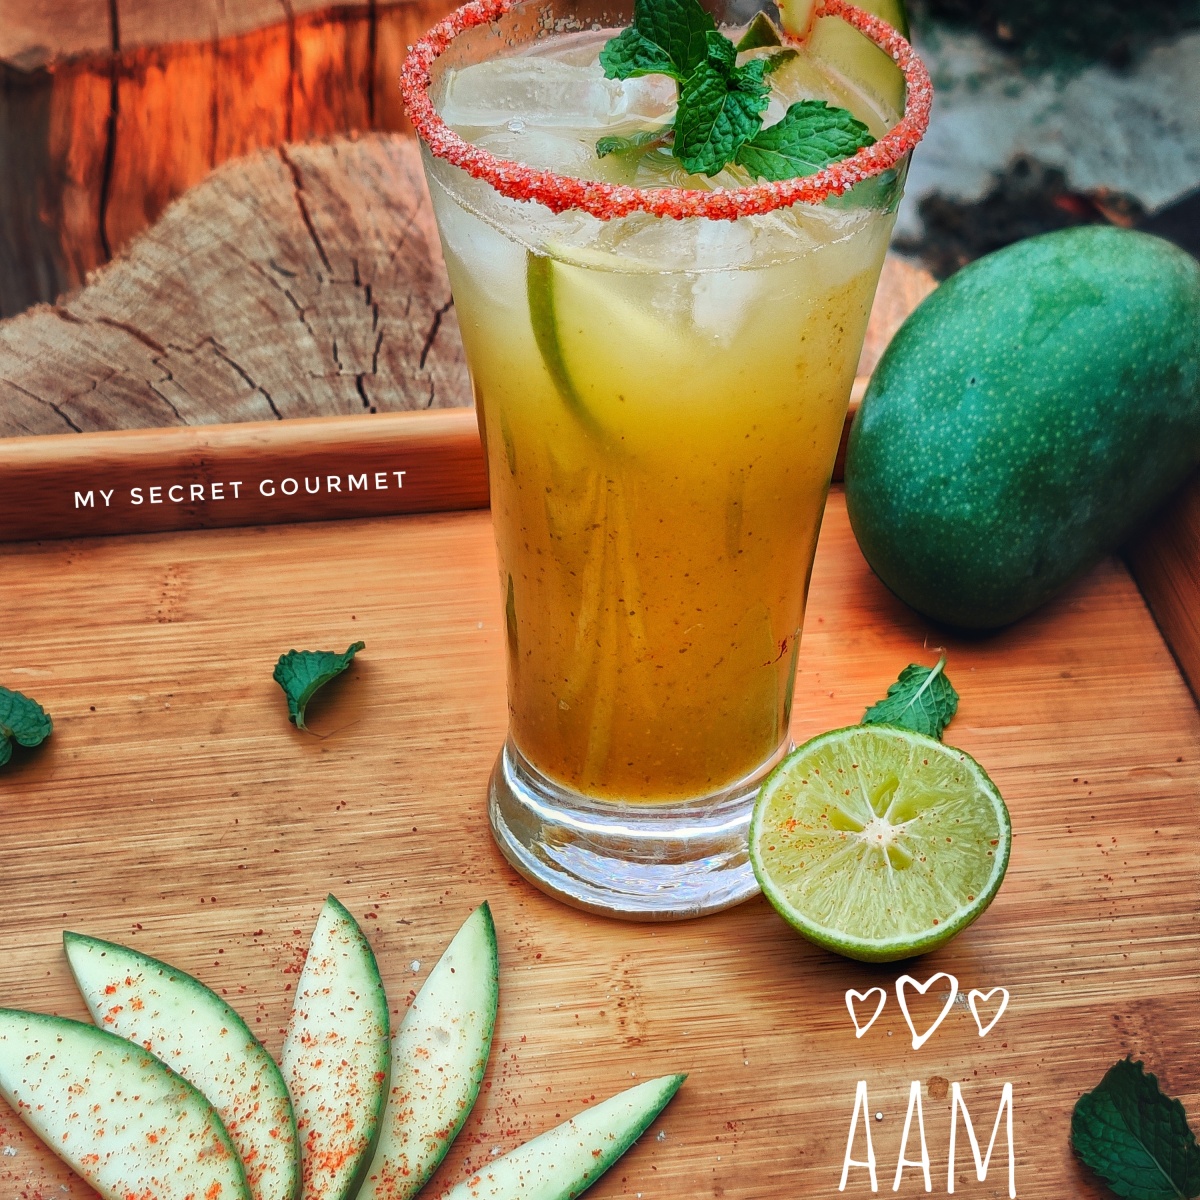 Aam Panna (Green Mango Drink)